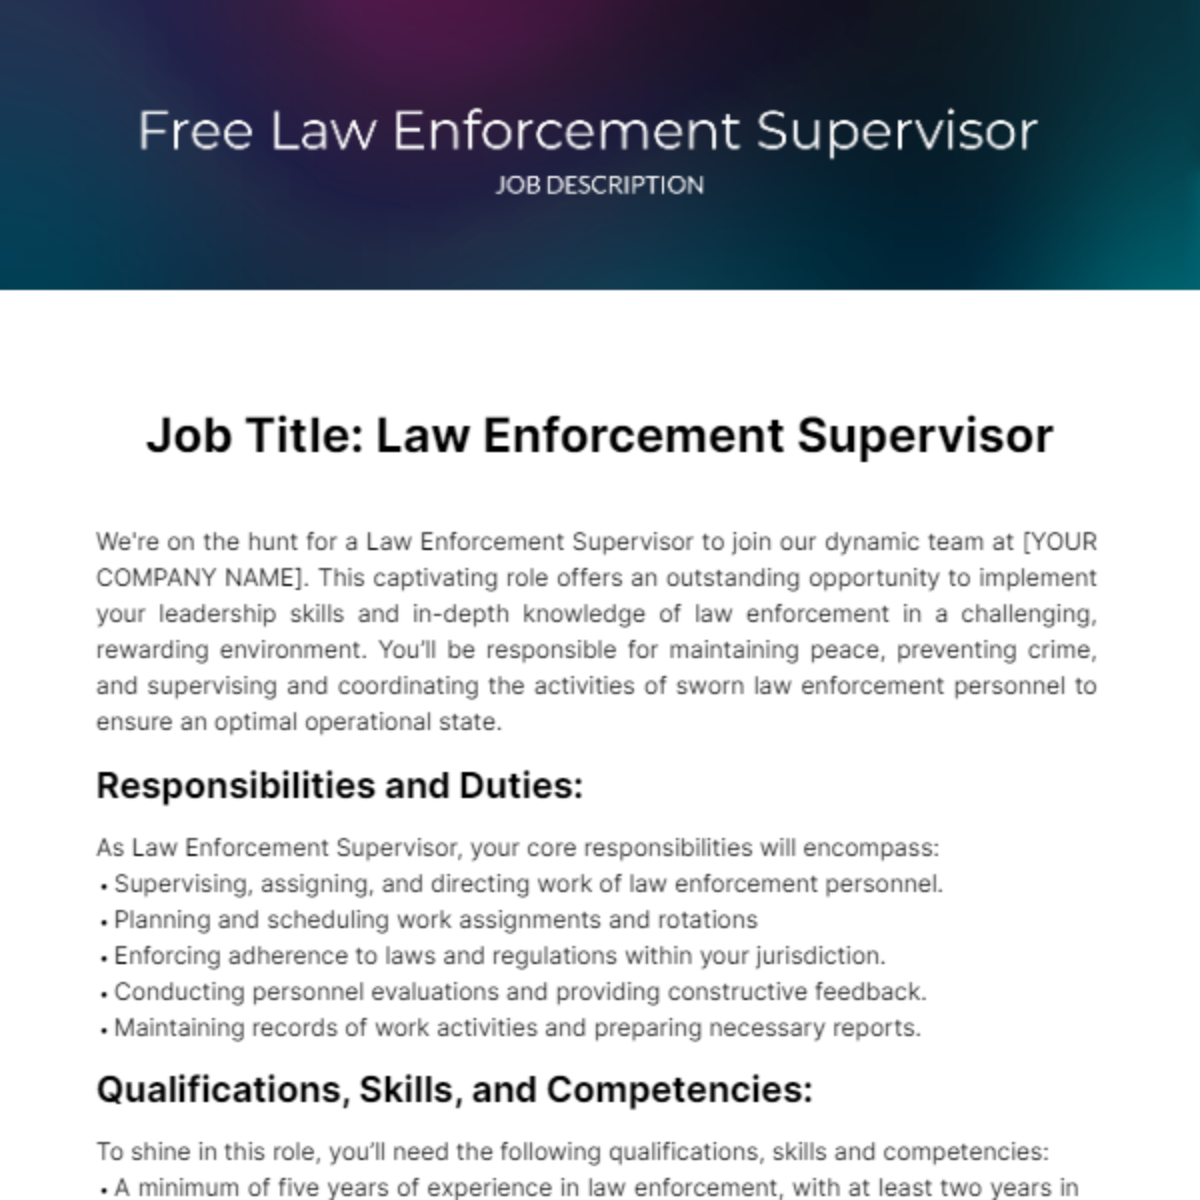 Free Law Enforcement Supervisor Job Description Template